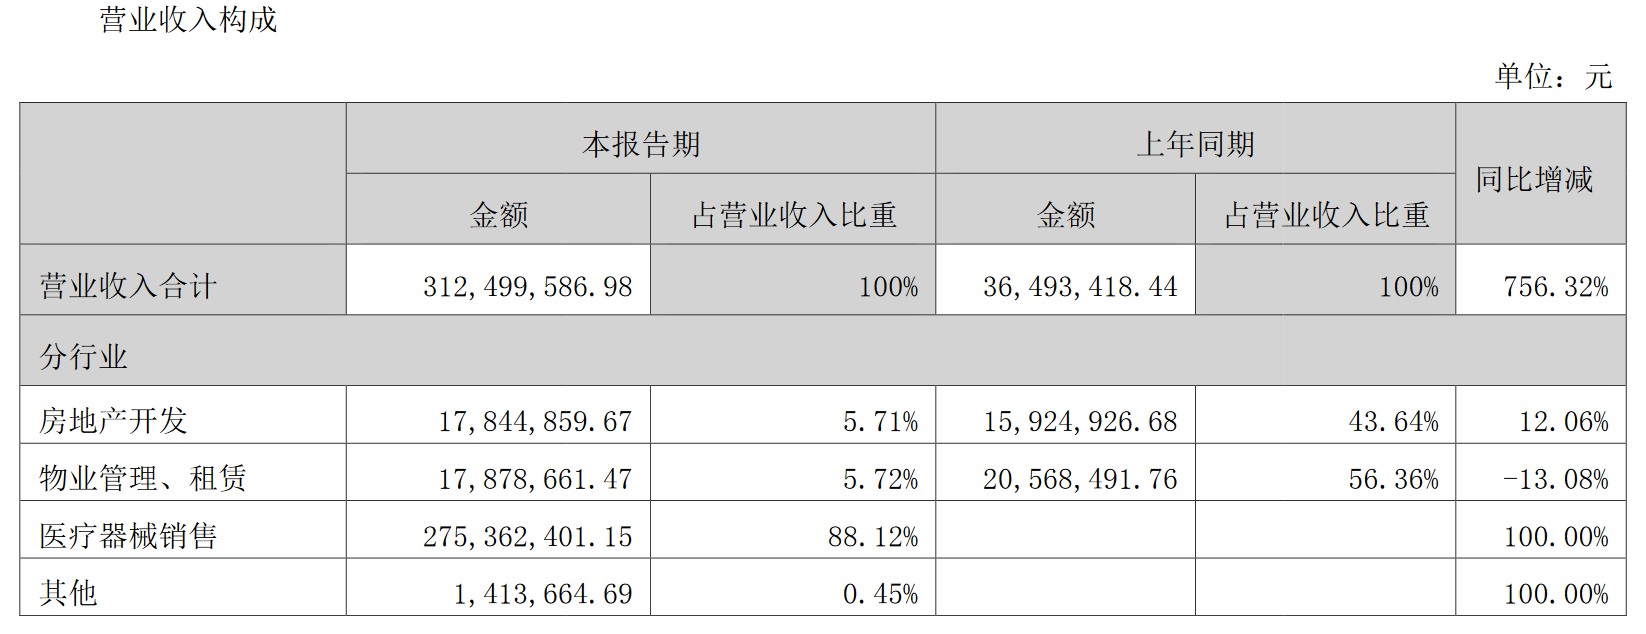 转身未见光明丨荣丰控股拟出售威宇医疗33.74%股权 回归房地产开发主业_中国网地产